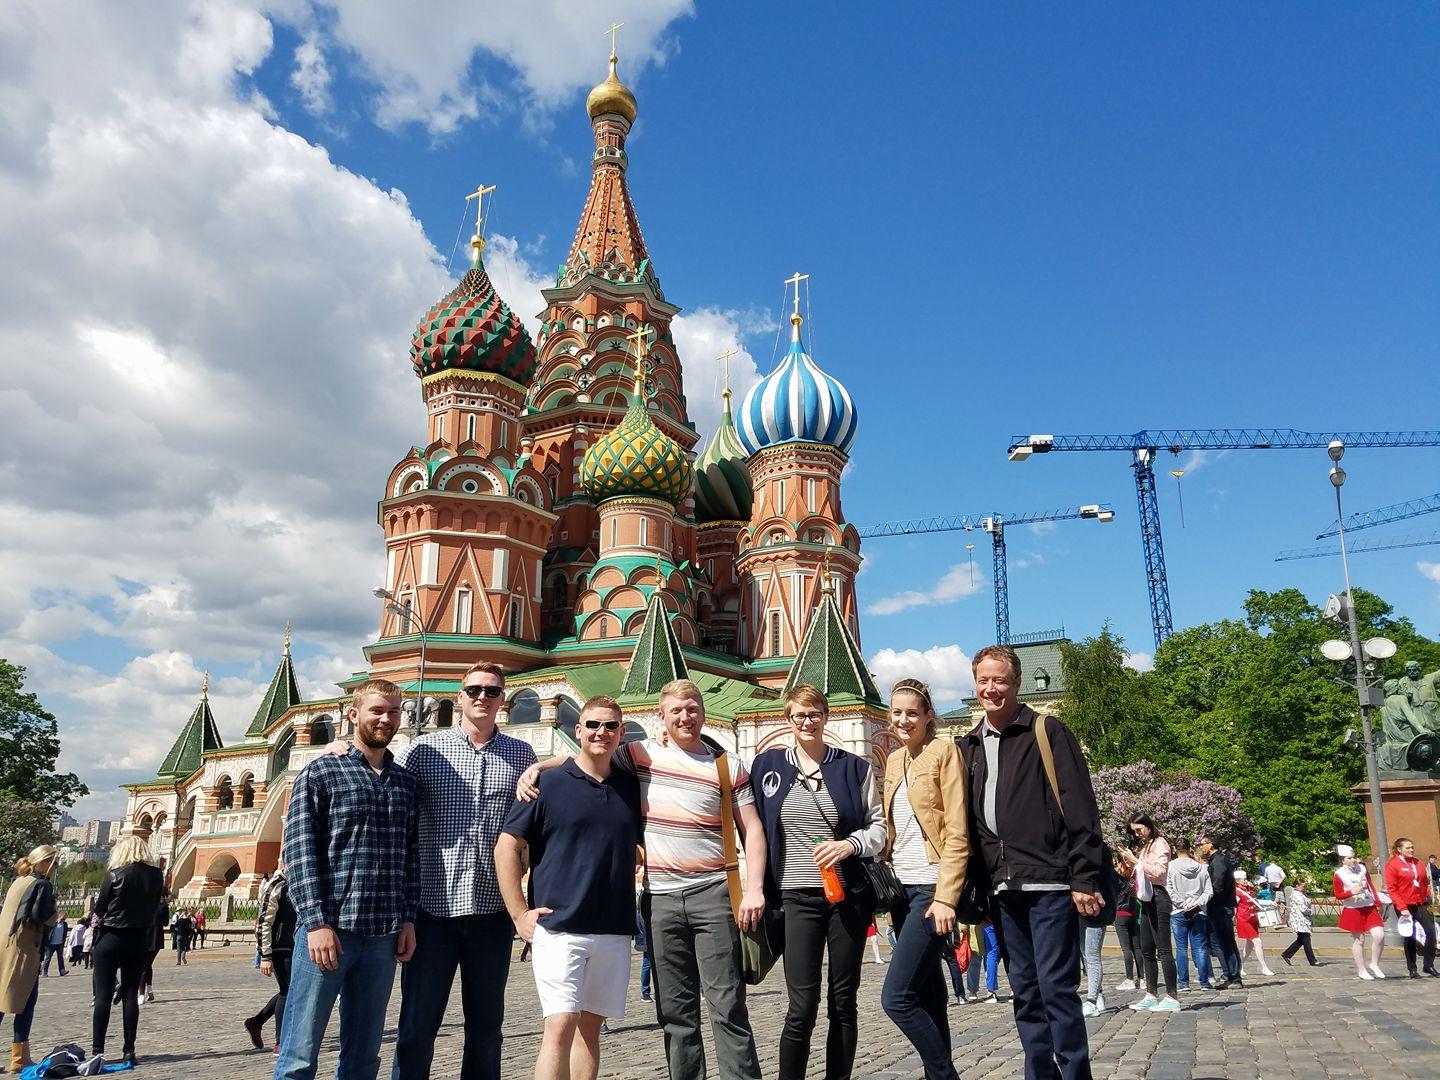 BGSU俄语专业的学生有机会到莫斯科和圣彼得堡留学. Petersburg.